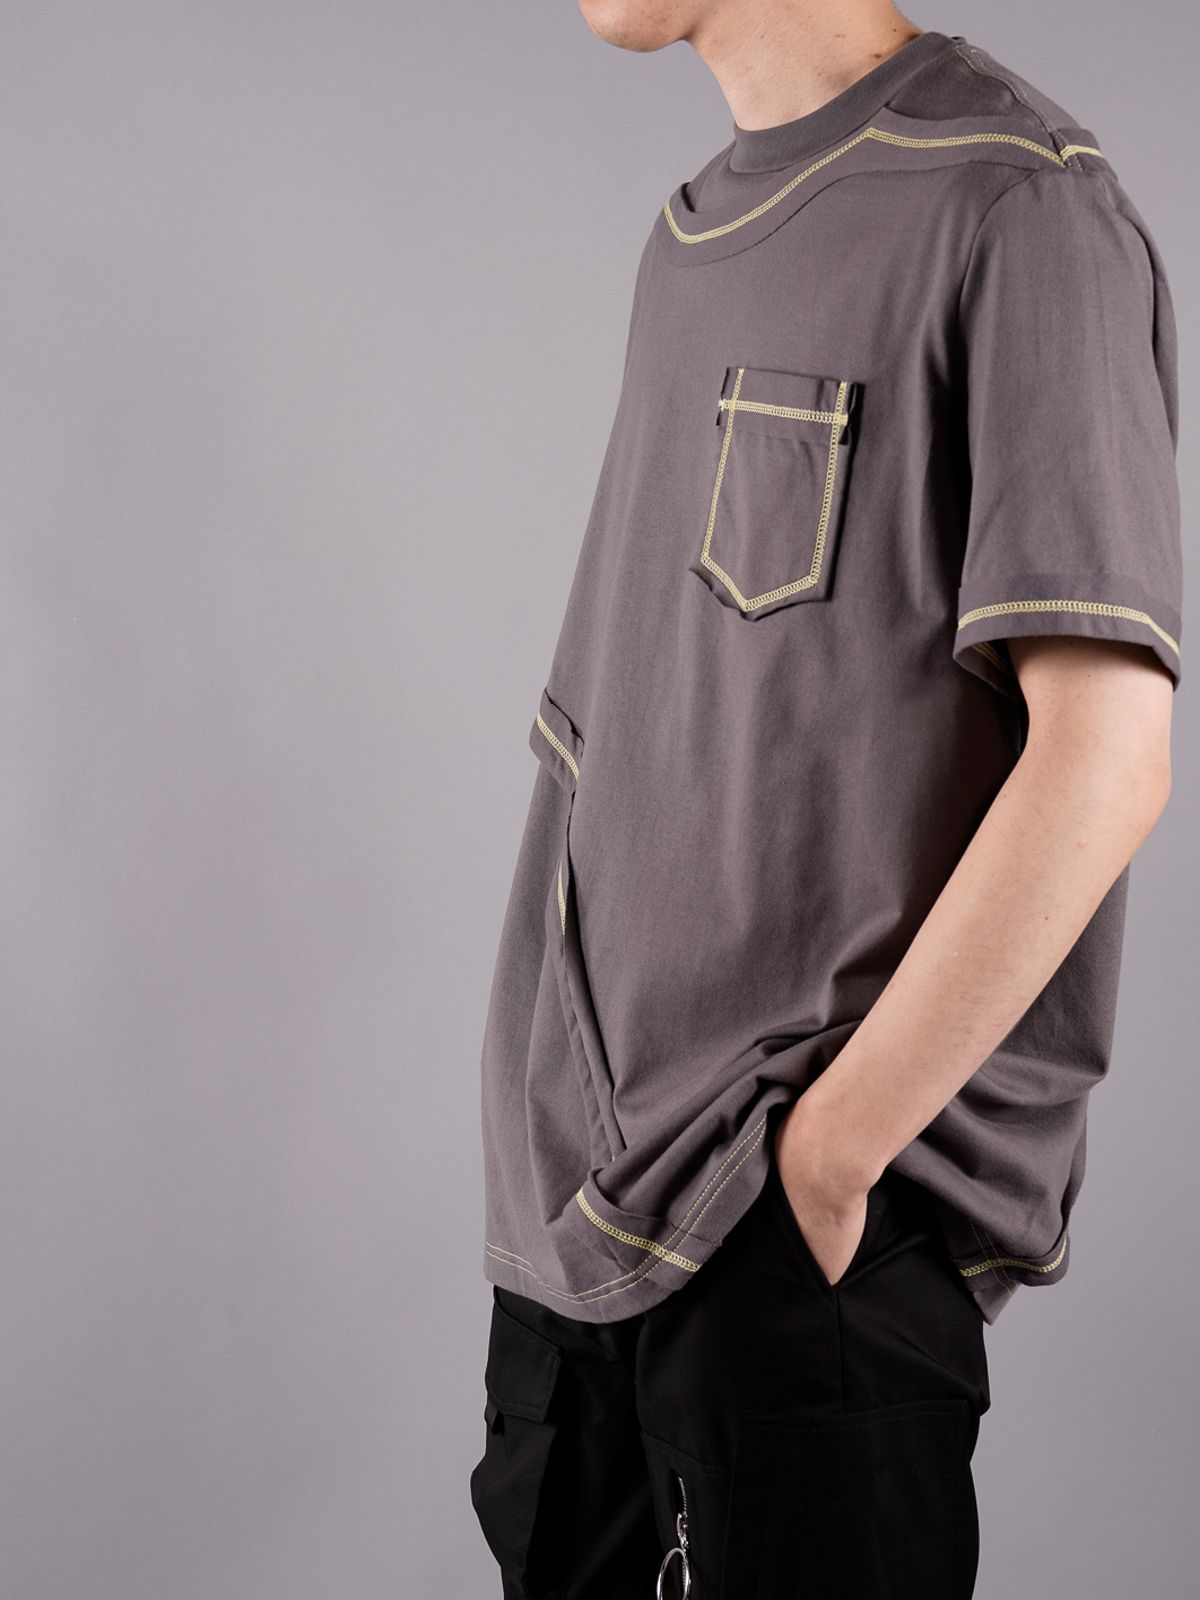 CONTRAST LAYERED T-SHIRT NAVY / コントラスト レイヤード Tシャツ (グレー) - M